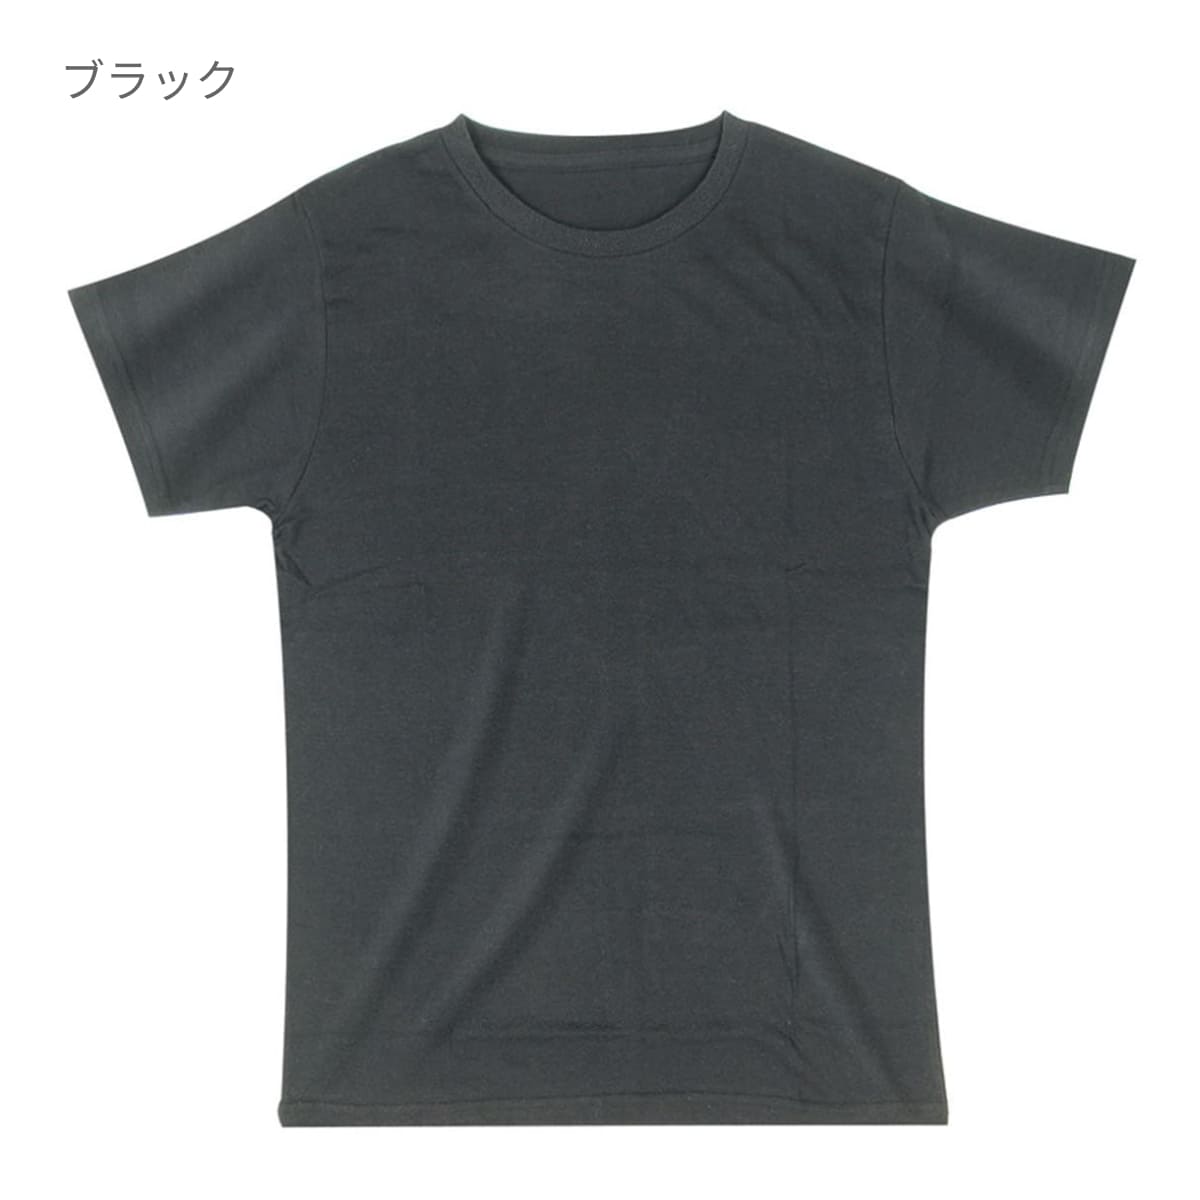 トライブレンドTシャツ | メンズ | 1枚 | CR1103 | ミックスアッシュ